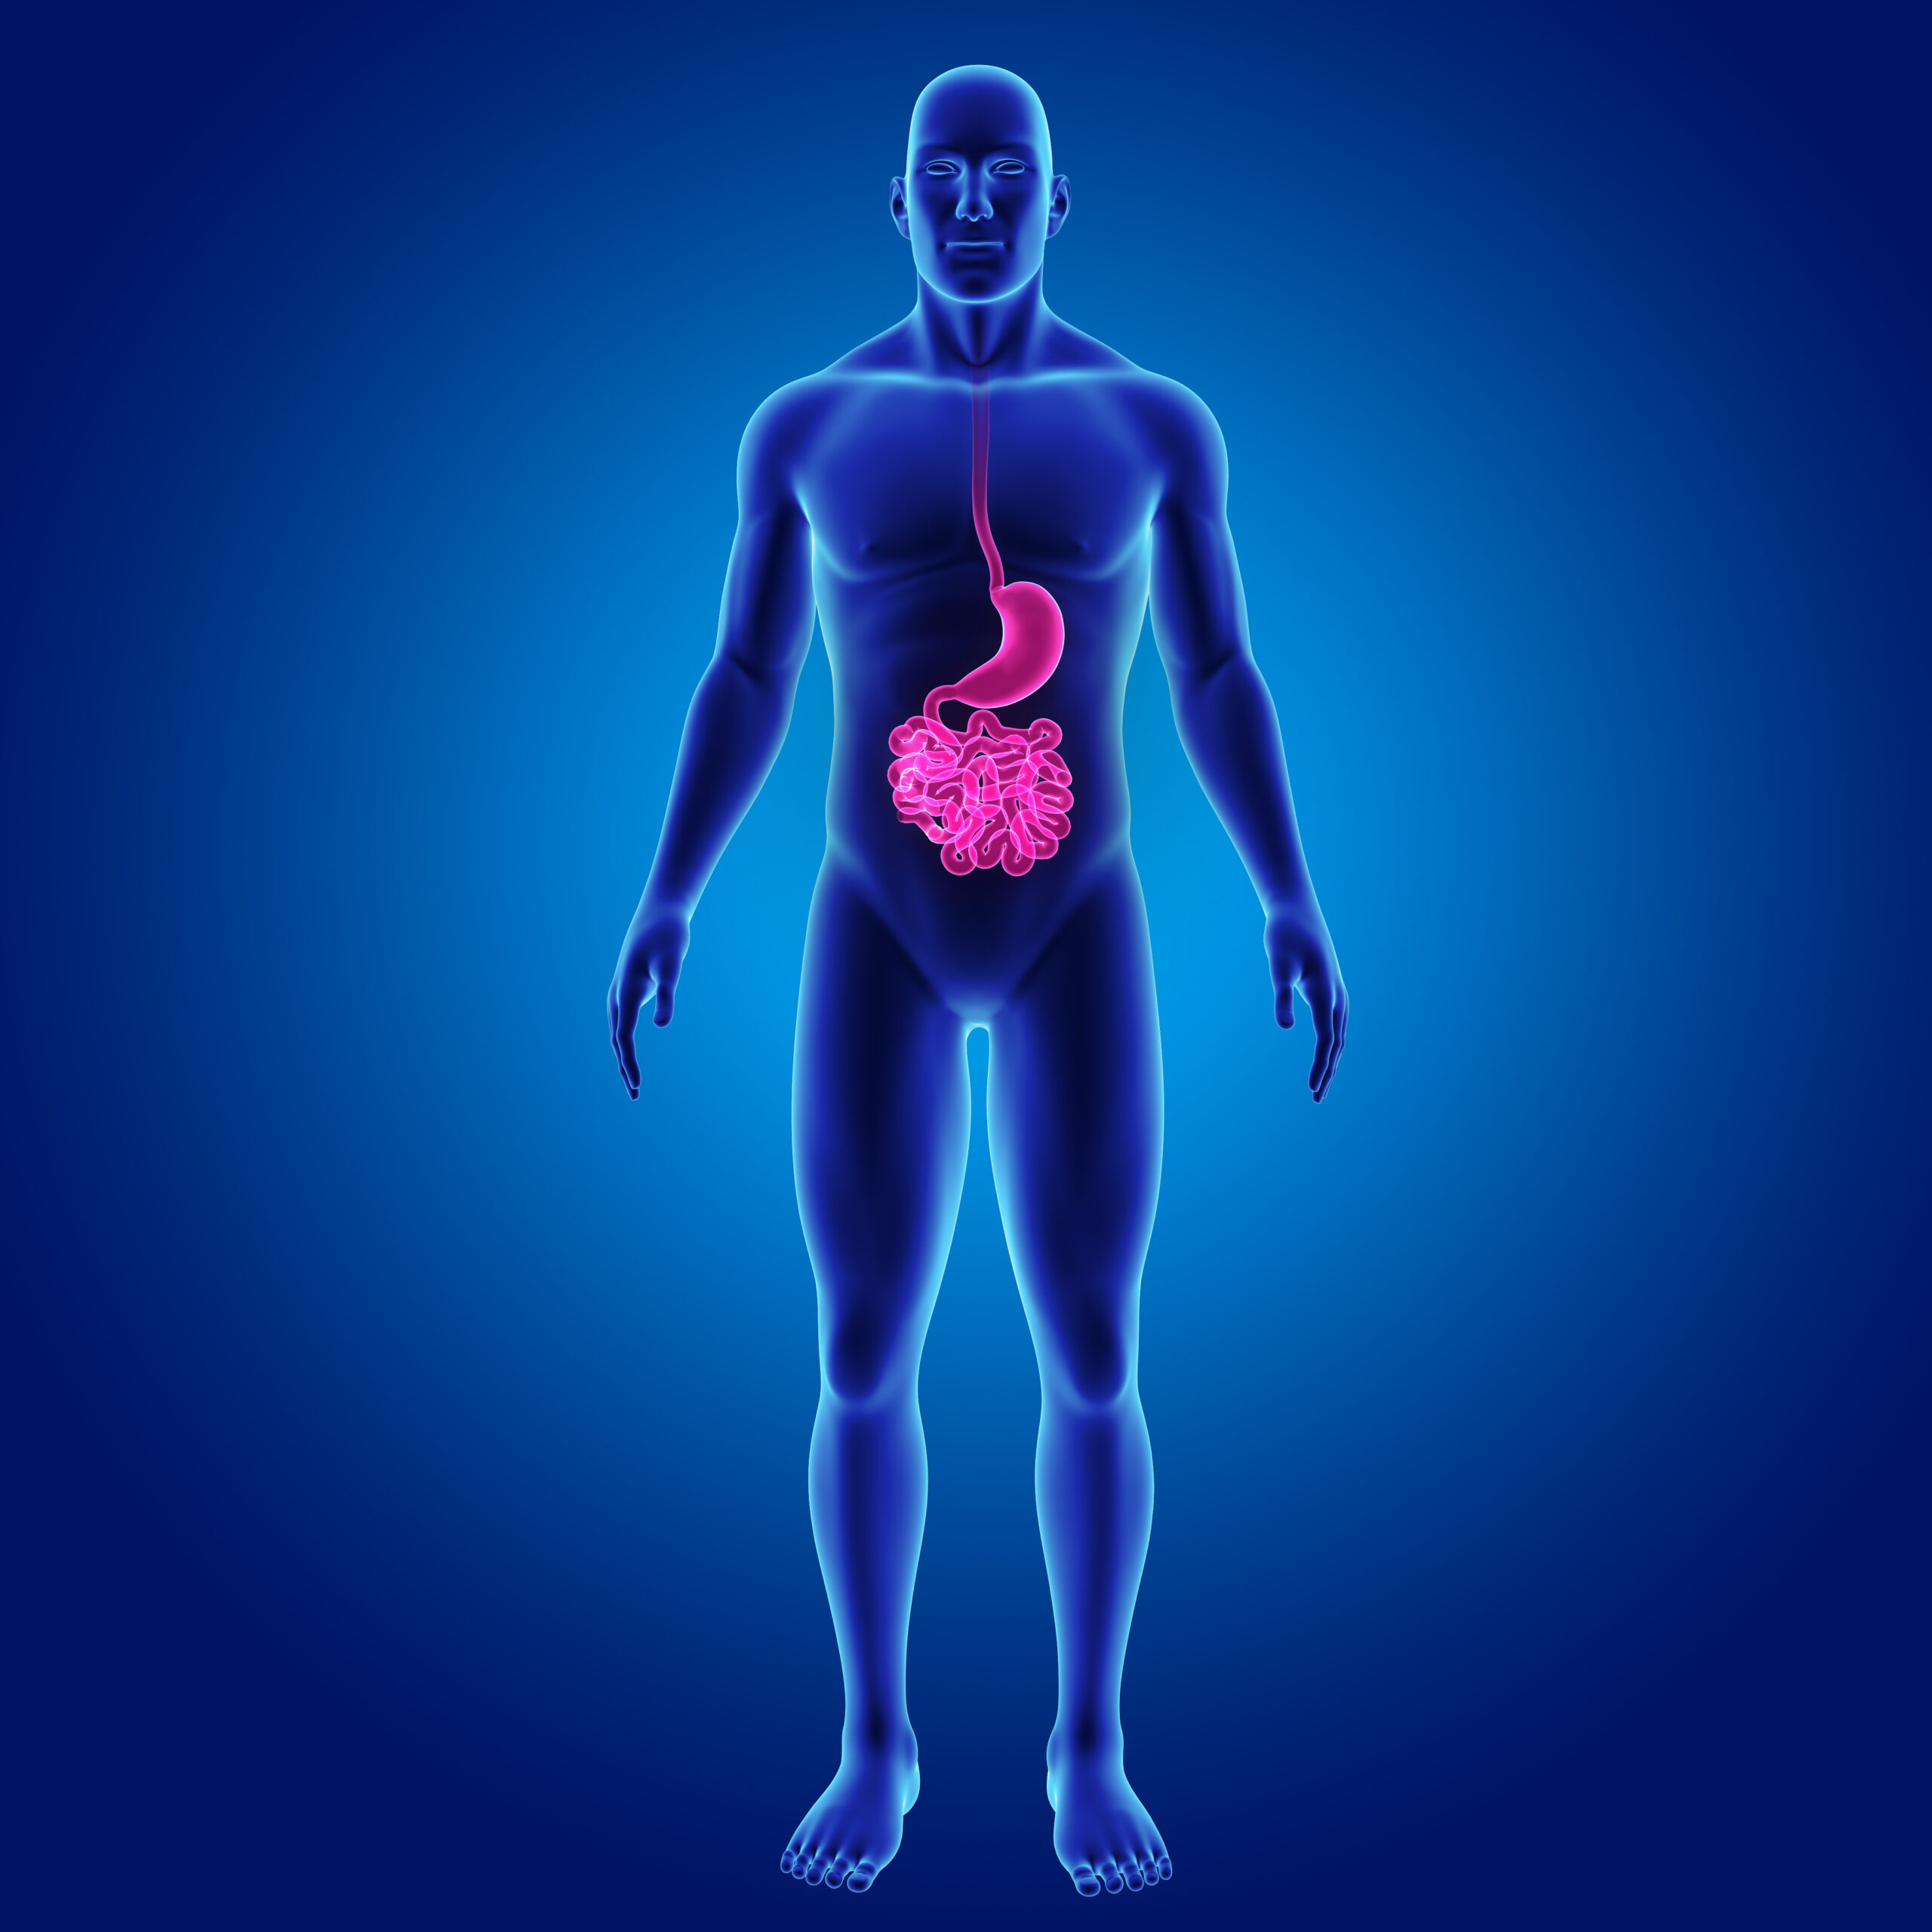 Small intestine image in body